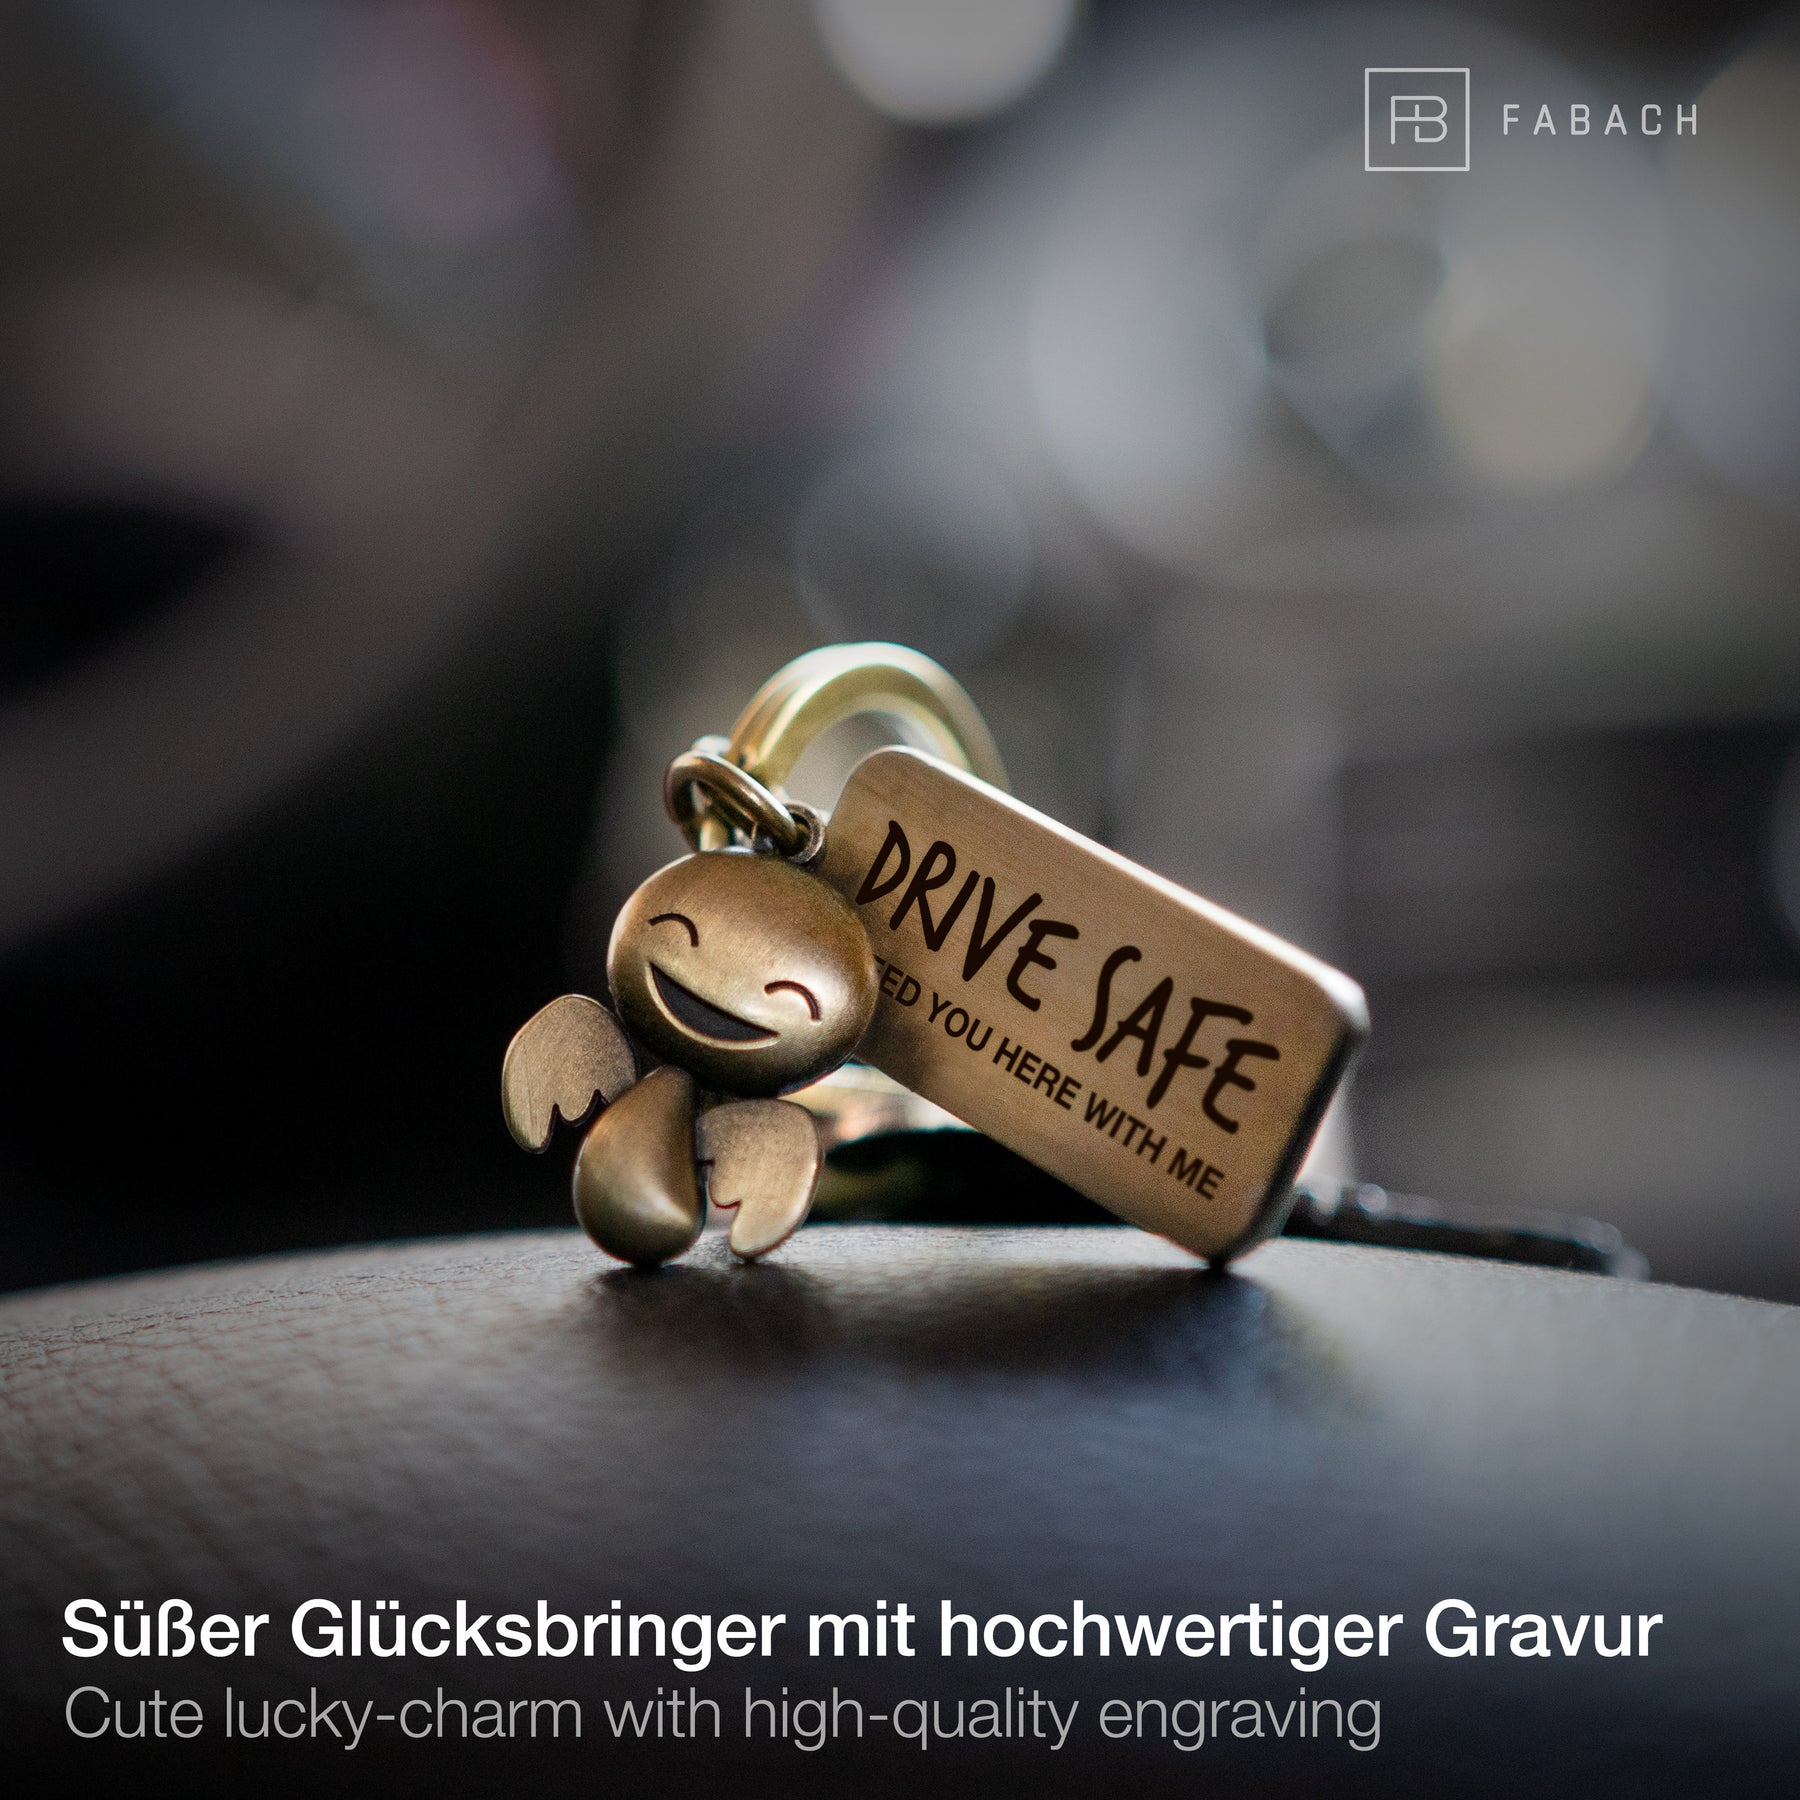 https://fabach.com/cdn/shop/products/Schutzengel-Happy-mit-Plaettchen-Drive-Safe-im-Auto_1800x.jpg?v=1598599643